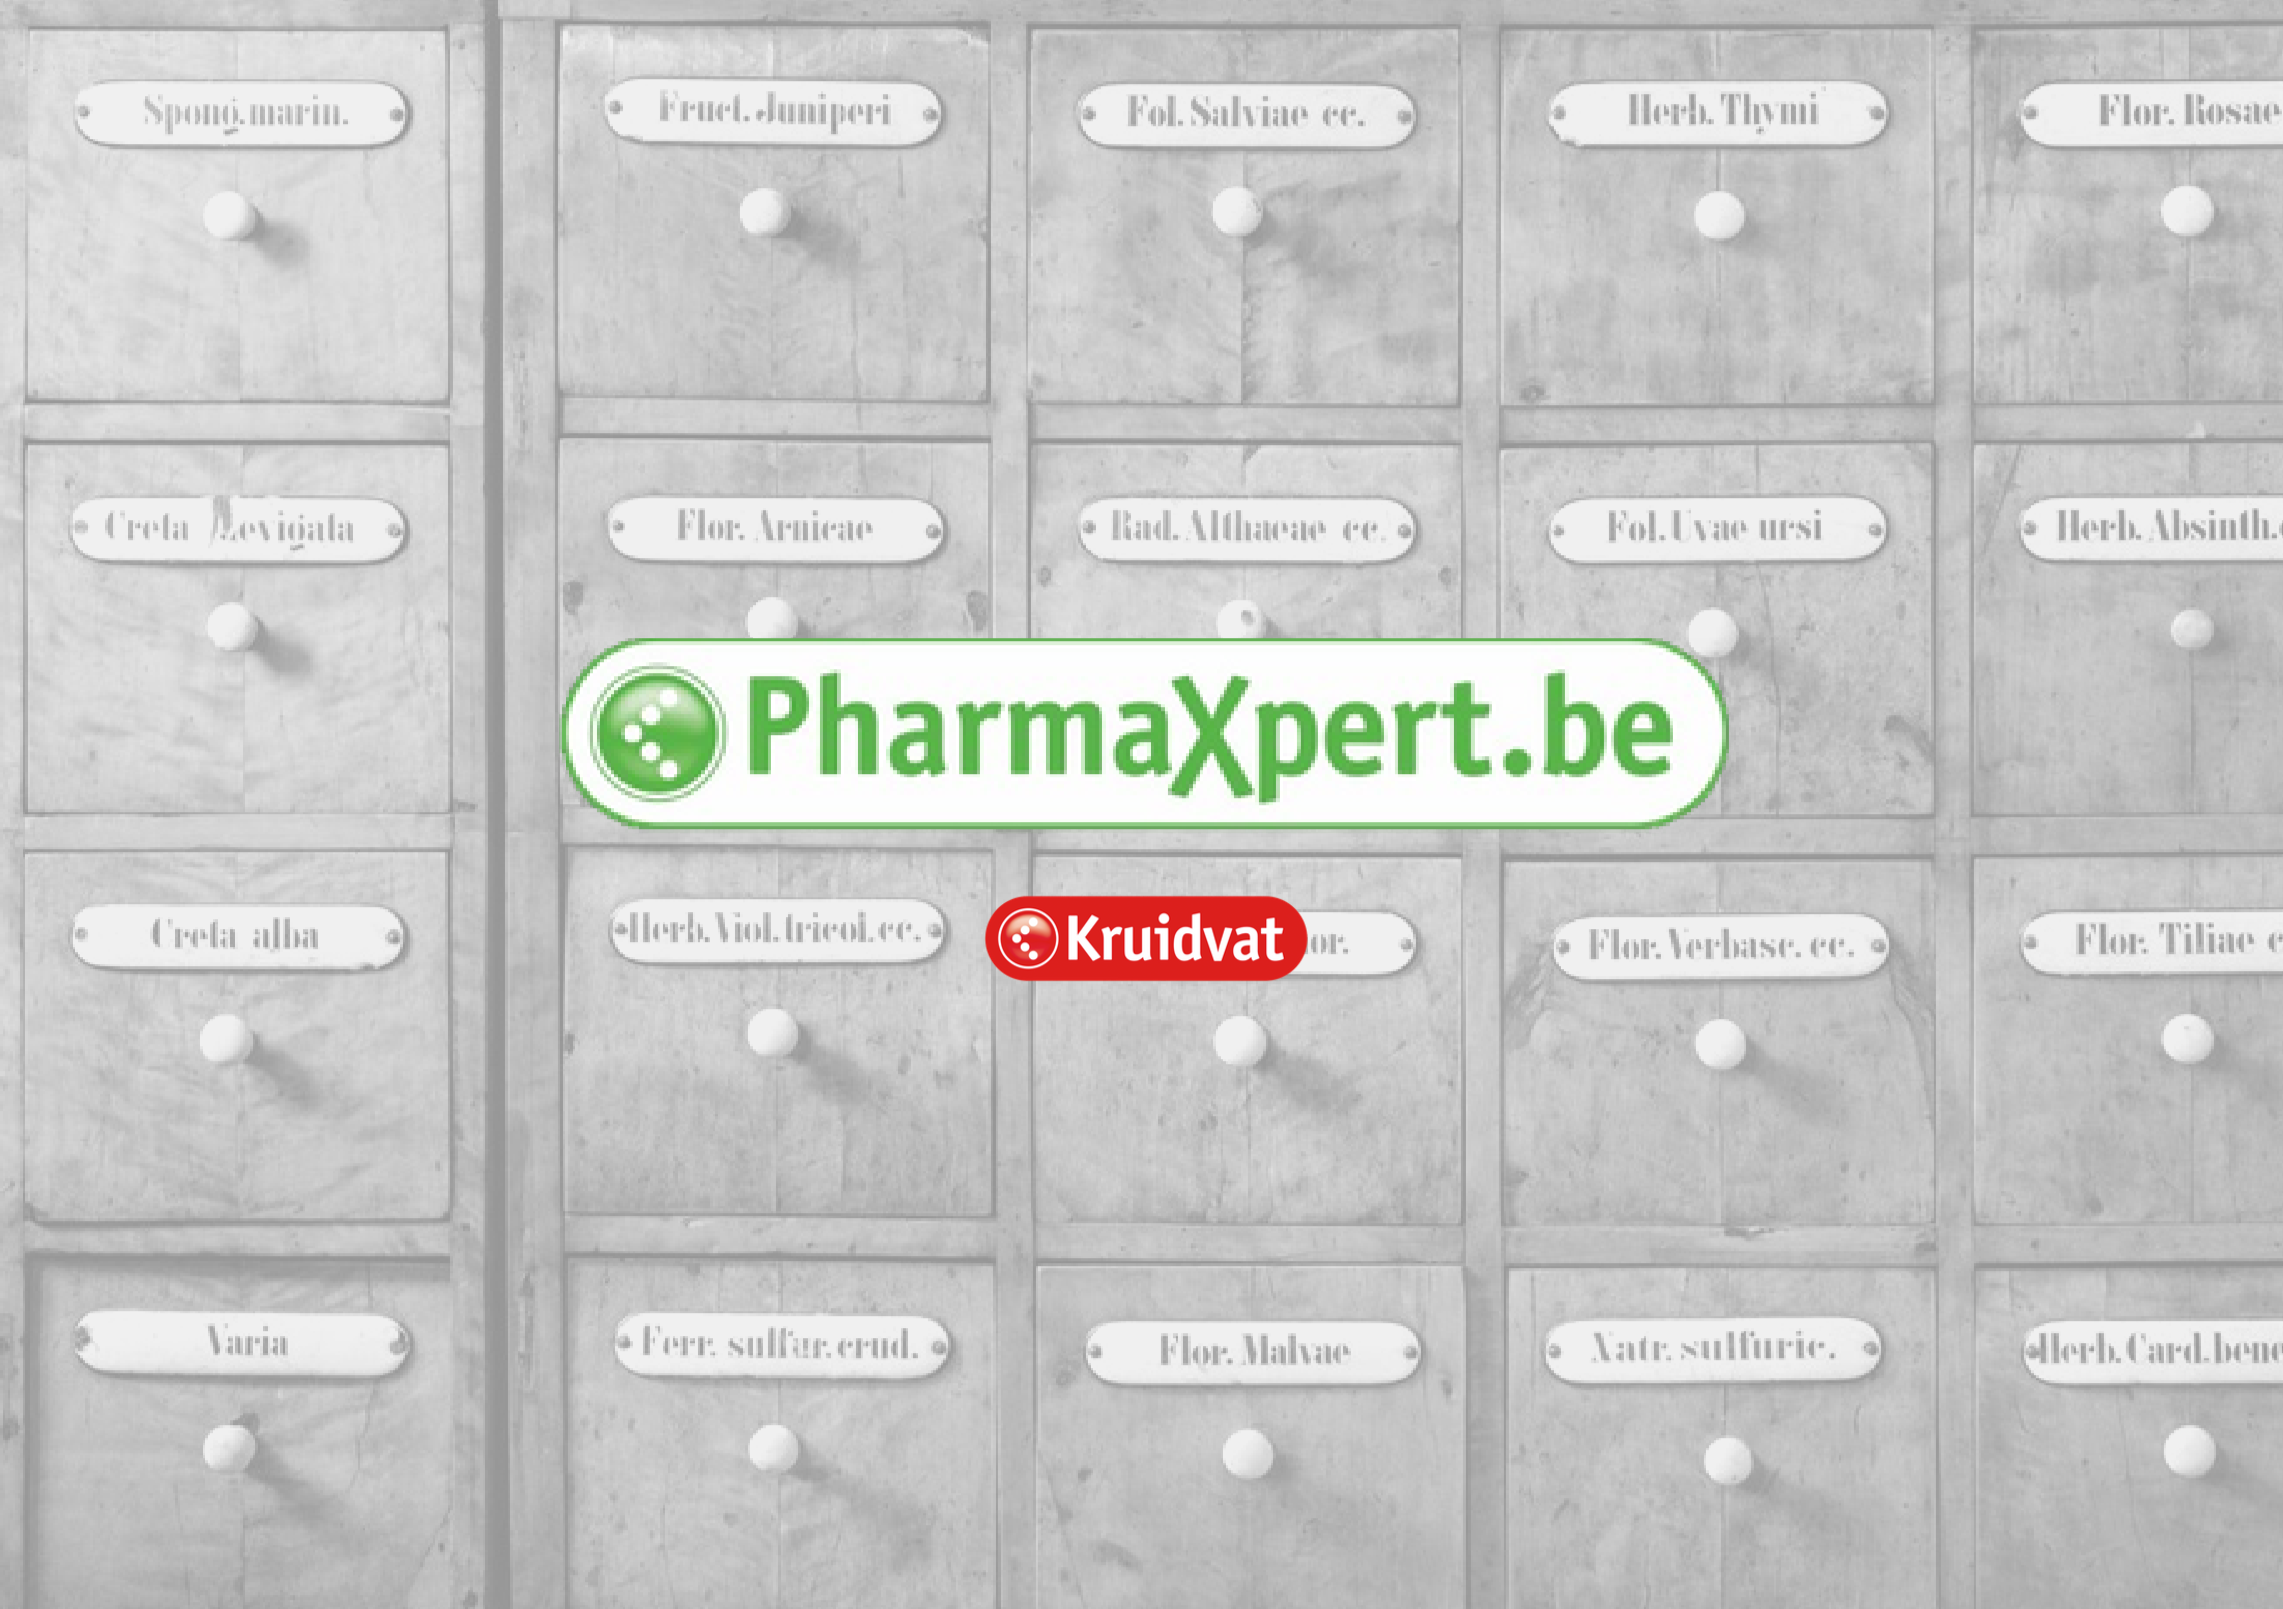 PharmaXpert - een gloednieuwe online apotheek van Kruidvat